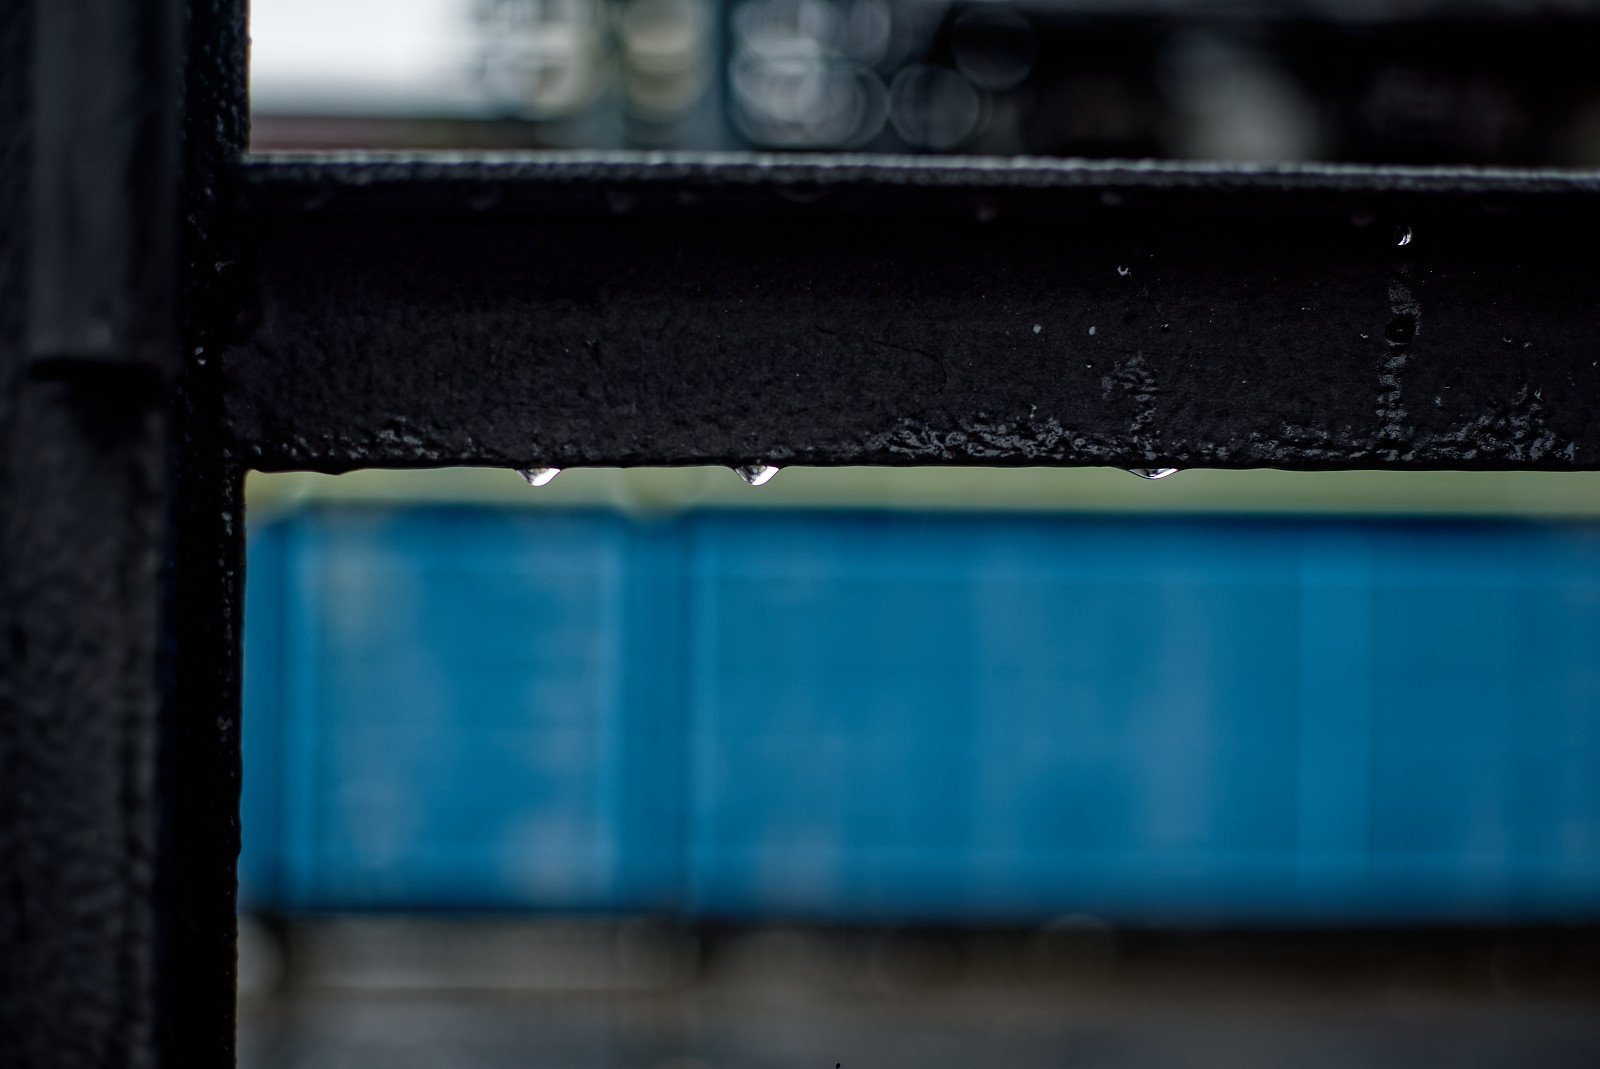 Metallener eckiger Handlauf mit einigen RegenTropfen, im hintergrund undefinierte blaue Fläche